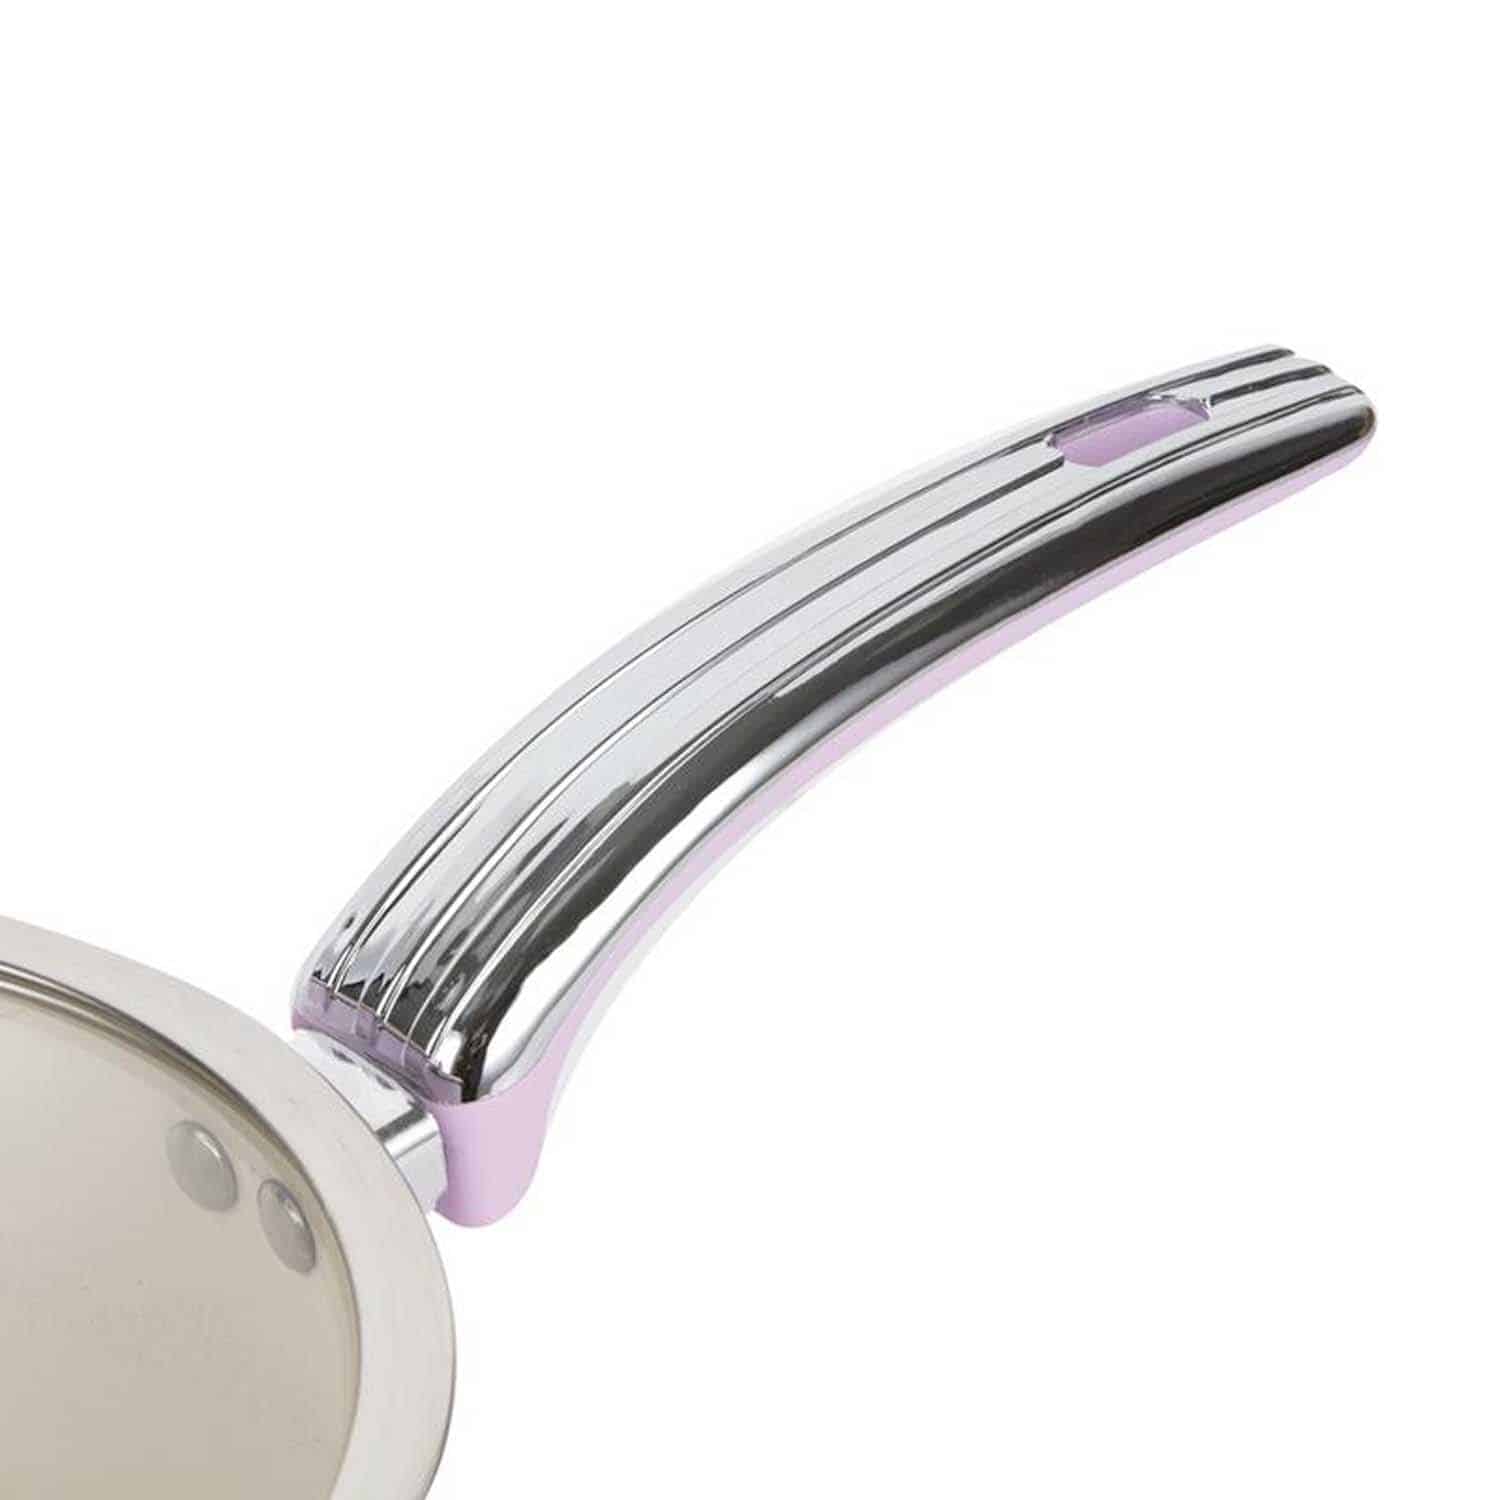 Swan Retro Frying Pans - Set Of 2 - Pink 